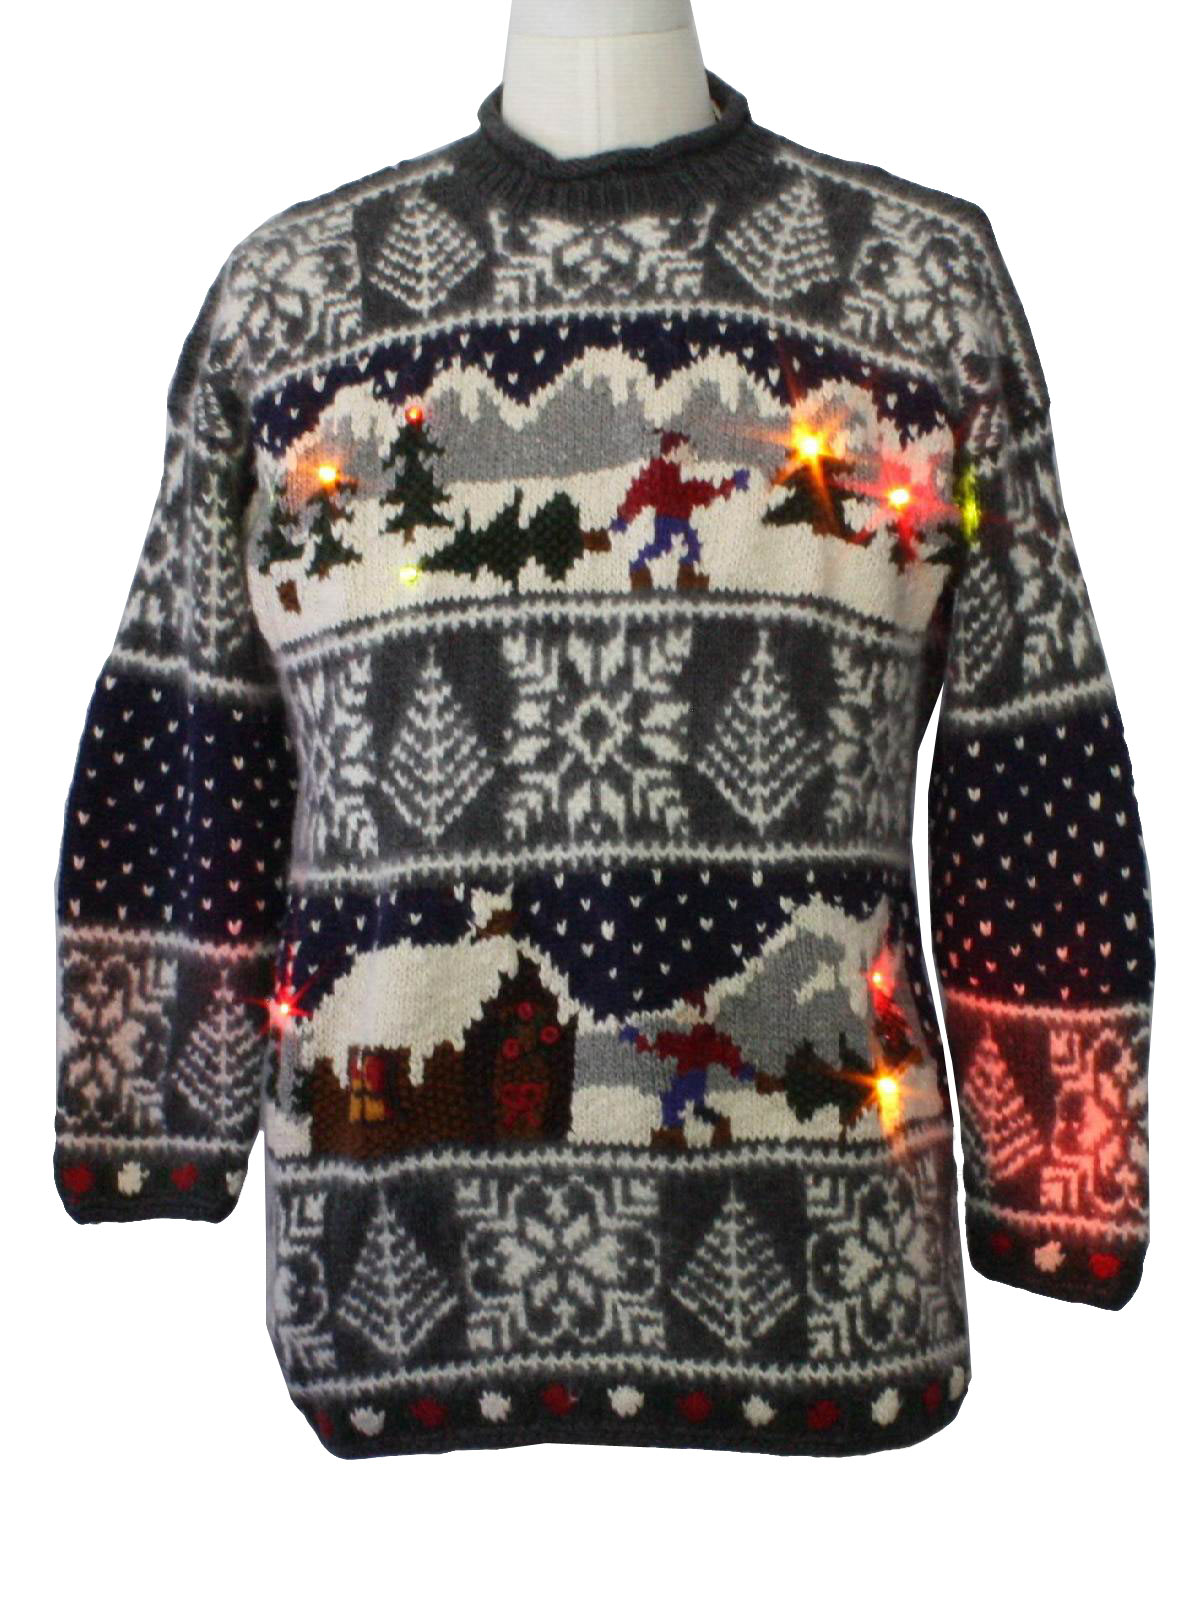 Ugly Lightup Christmas Sweater: -Marsh Landing- Unisex charcoal grey